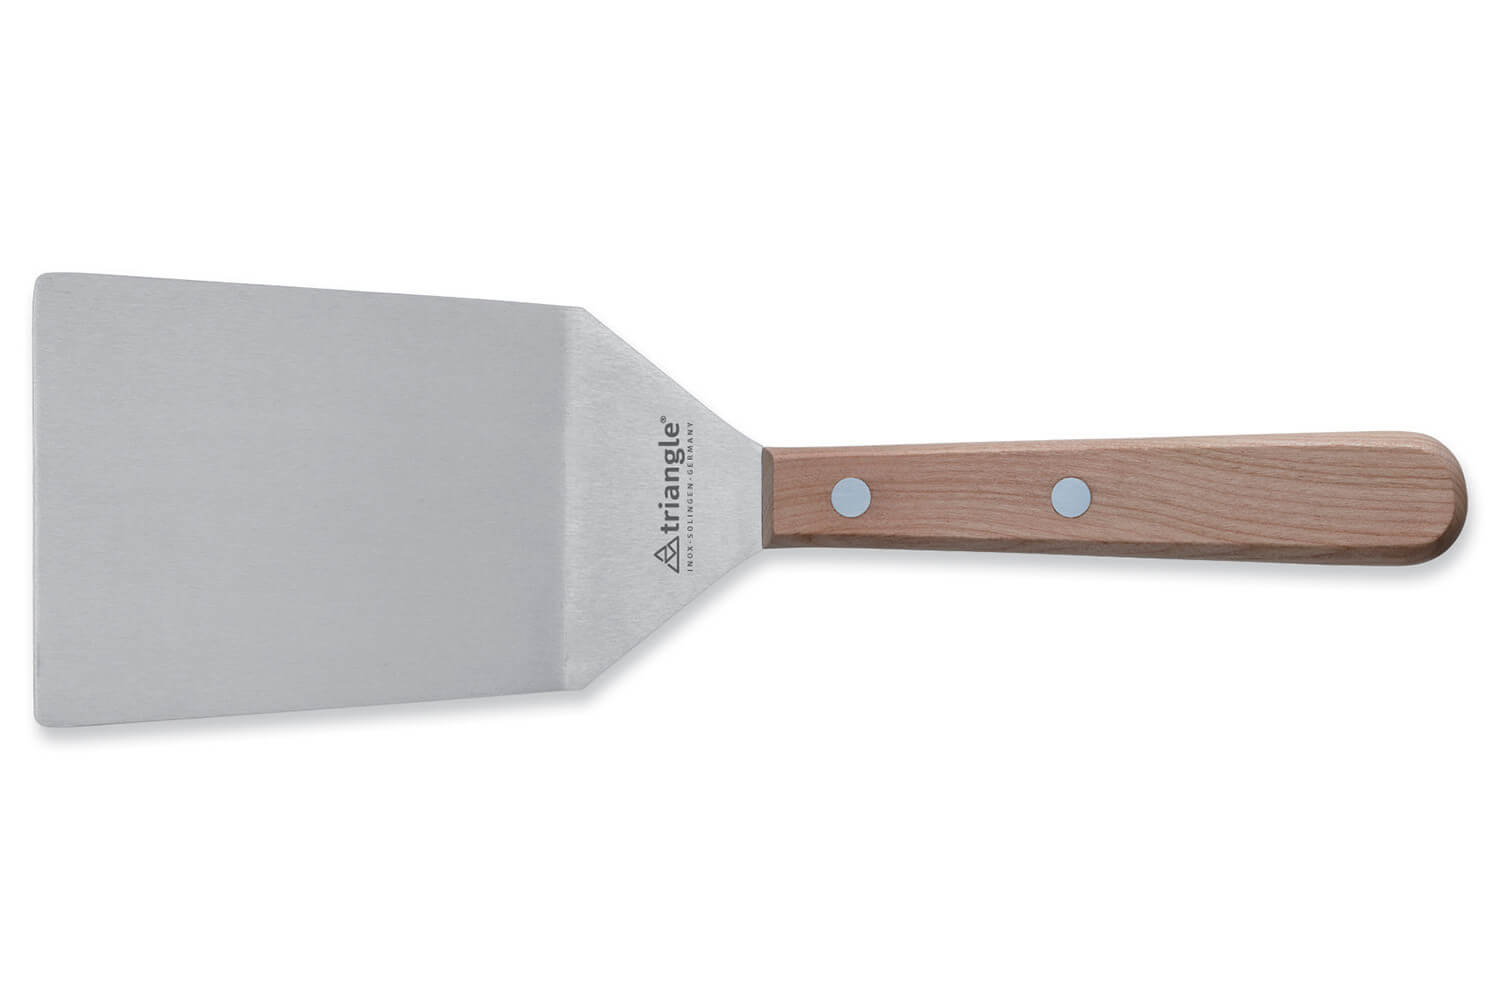 Palette ou spatule de cuisine coudée inox